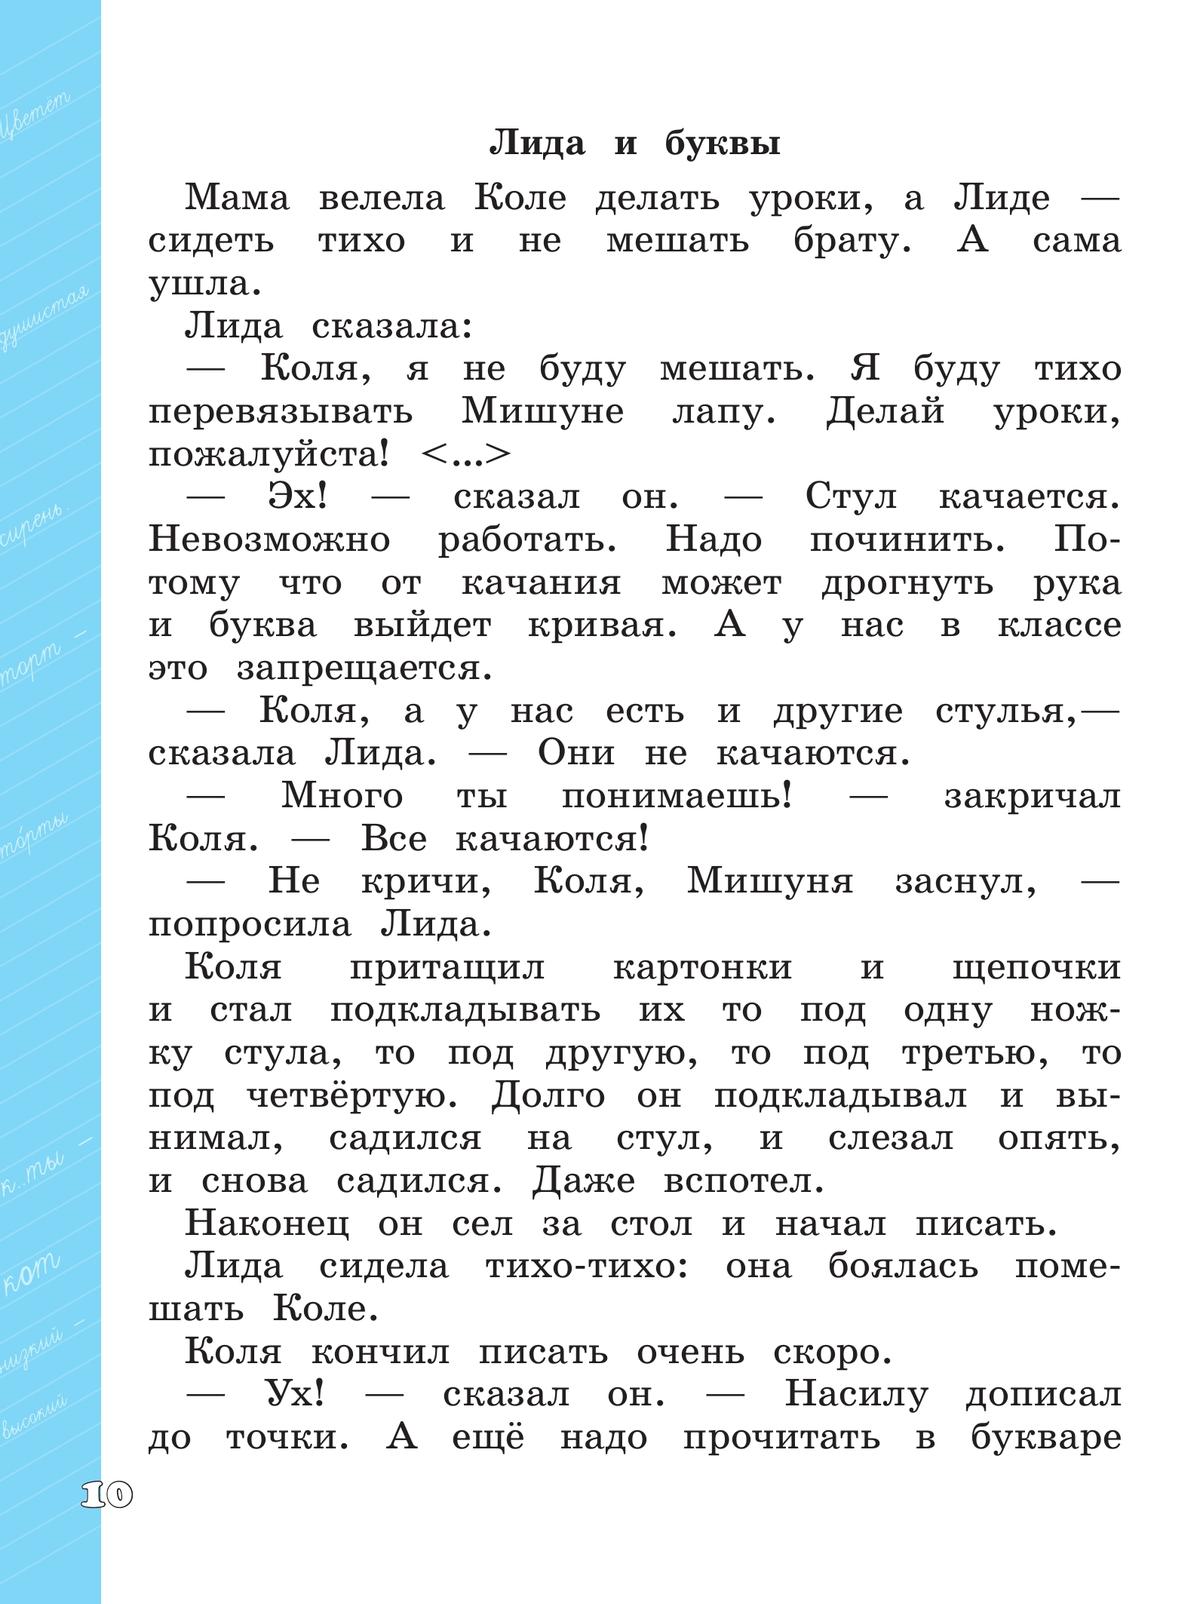 Языковая грамотность. Русский язык. Развитие. Диагностика. 1-2 классы 10